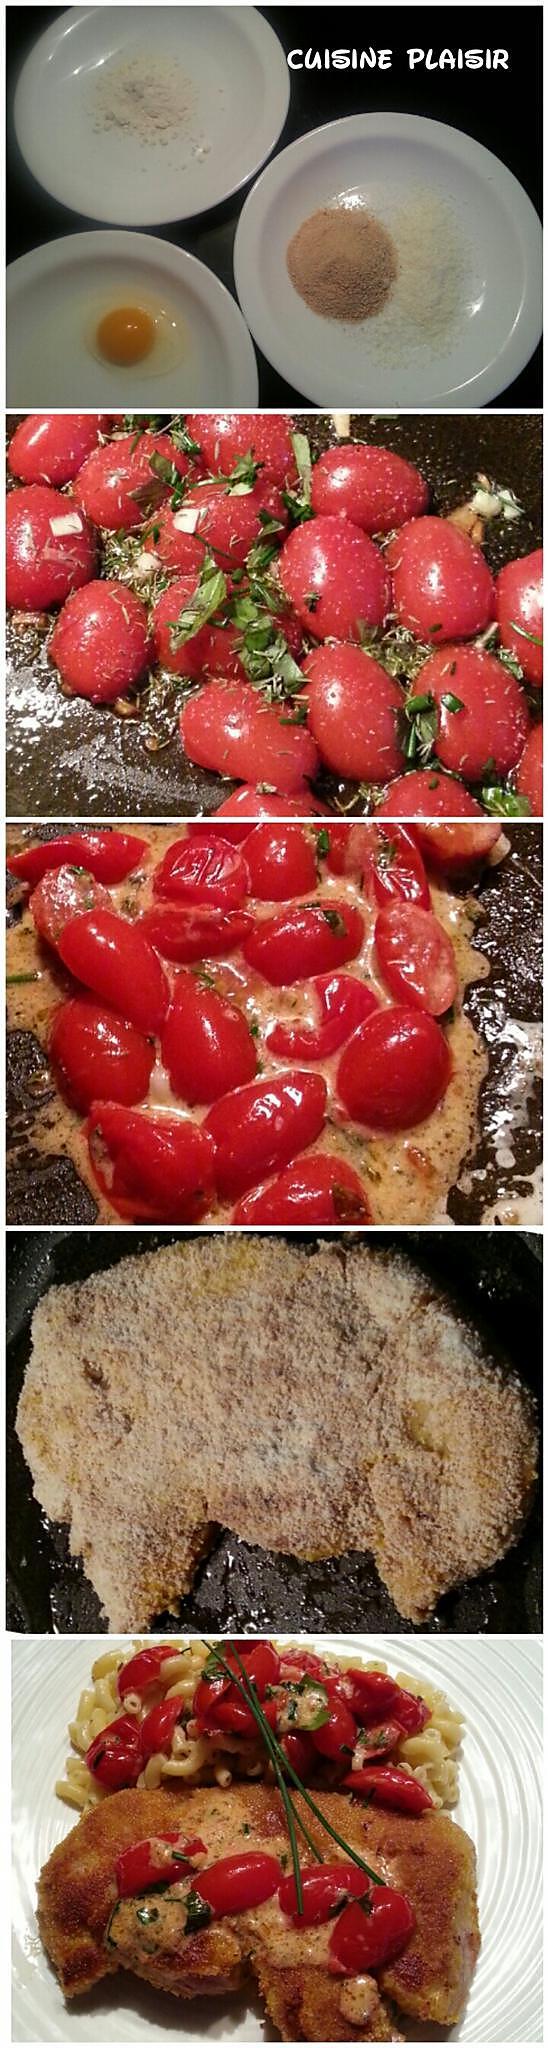 recette Entrecôtes de veau panée, sauce aux tomates cerise confites et coquillettes